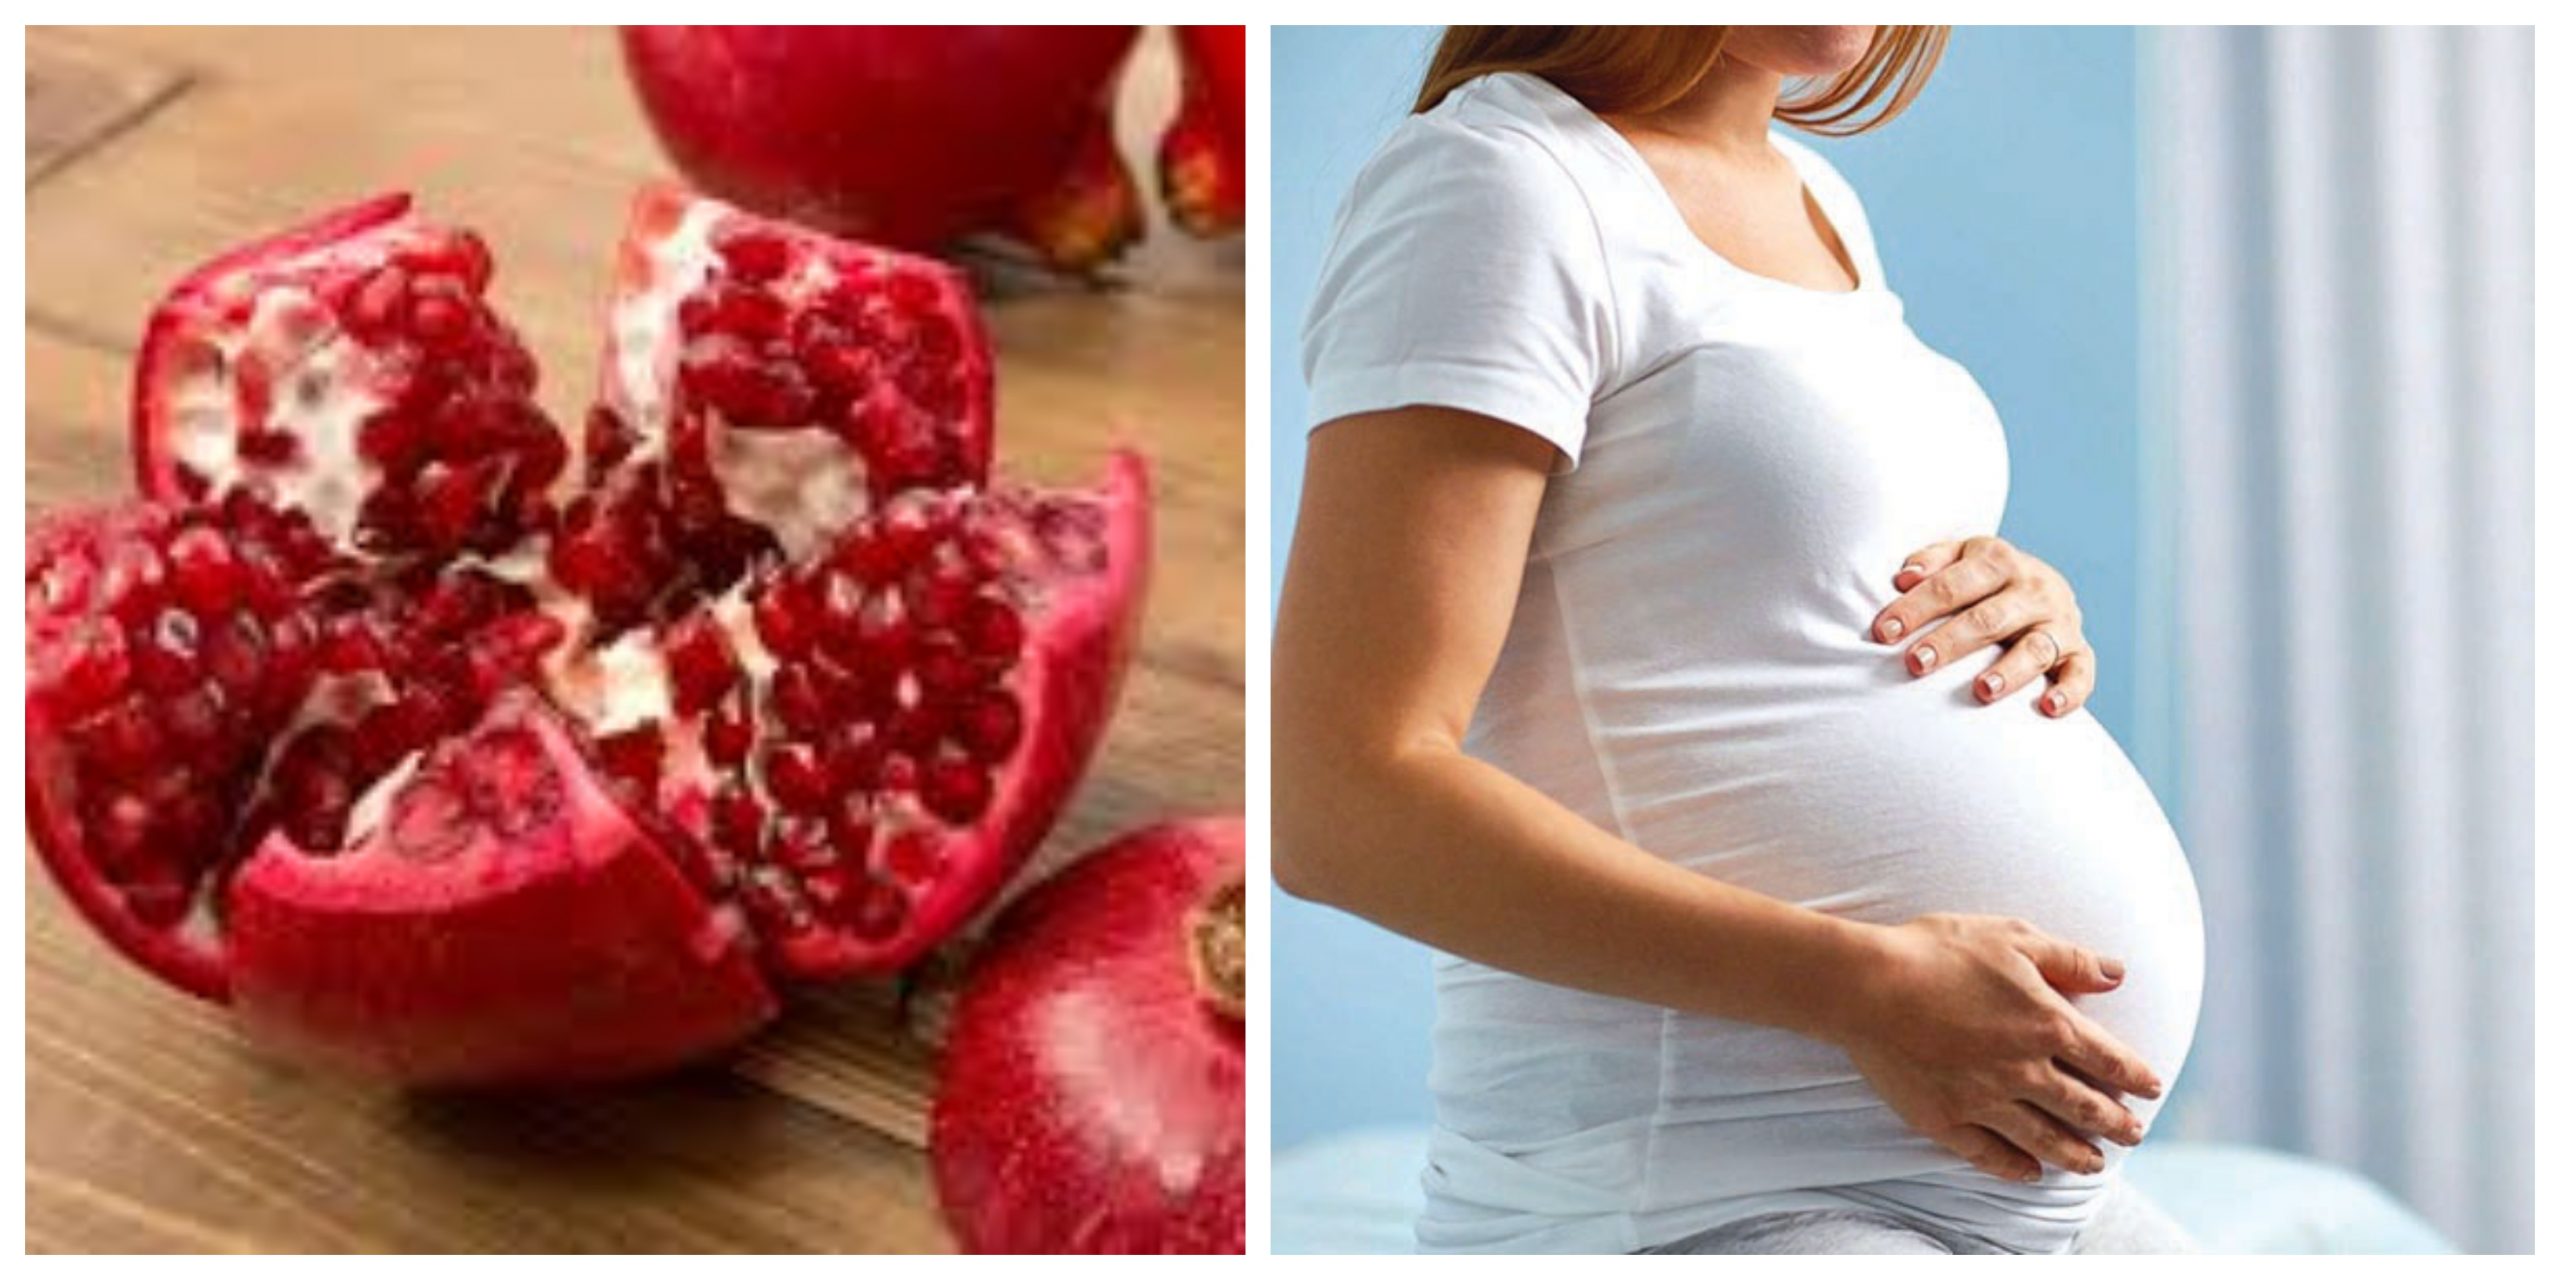 فوائد تناول الرمان في أثناء فترات الحمل